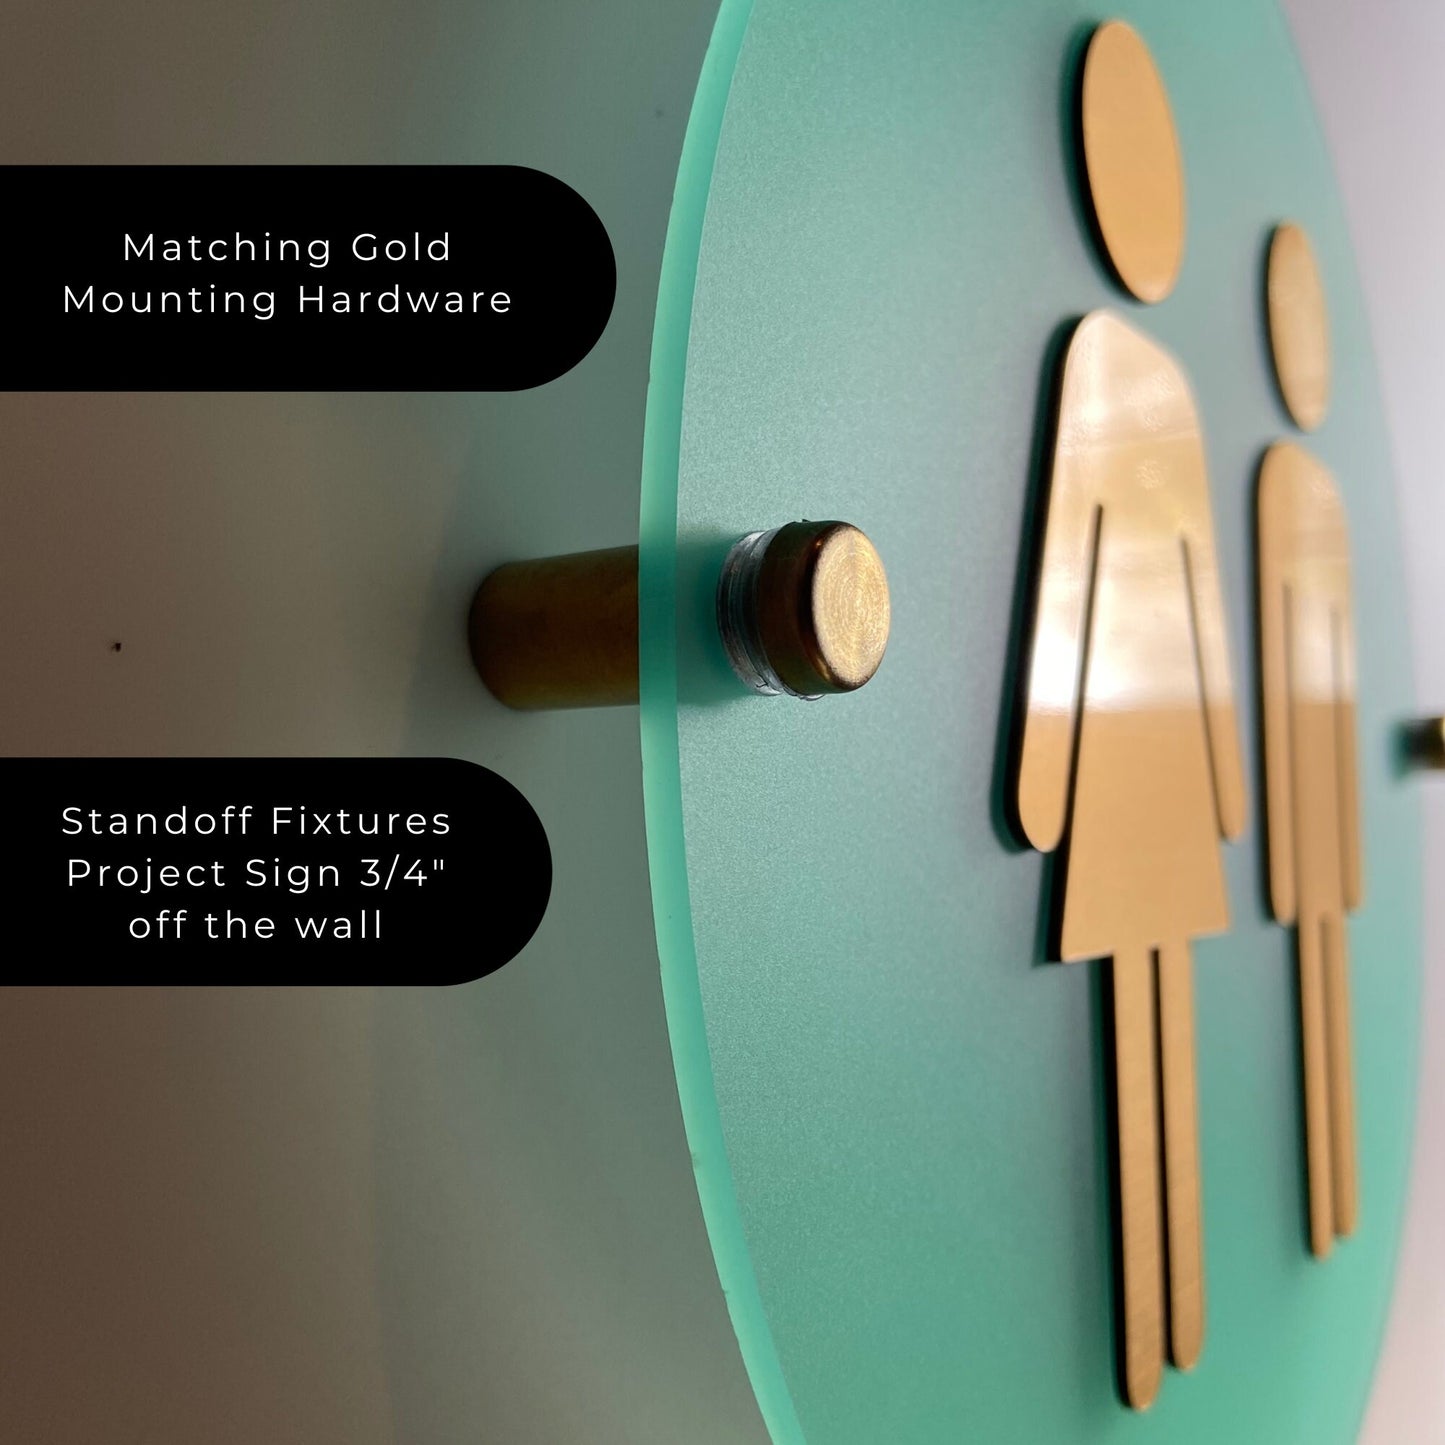 Aqua and Gold Acrylic Semi Transparent Restroom Signs | Business Men Women Handicap Bathroom 9x9" or 12x12" | Priced per sign not as a set